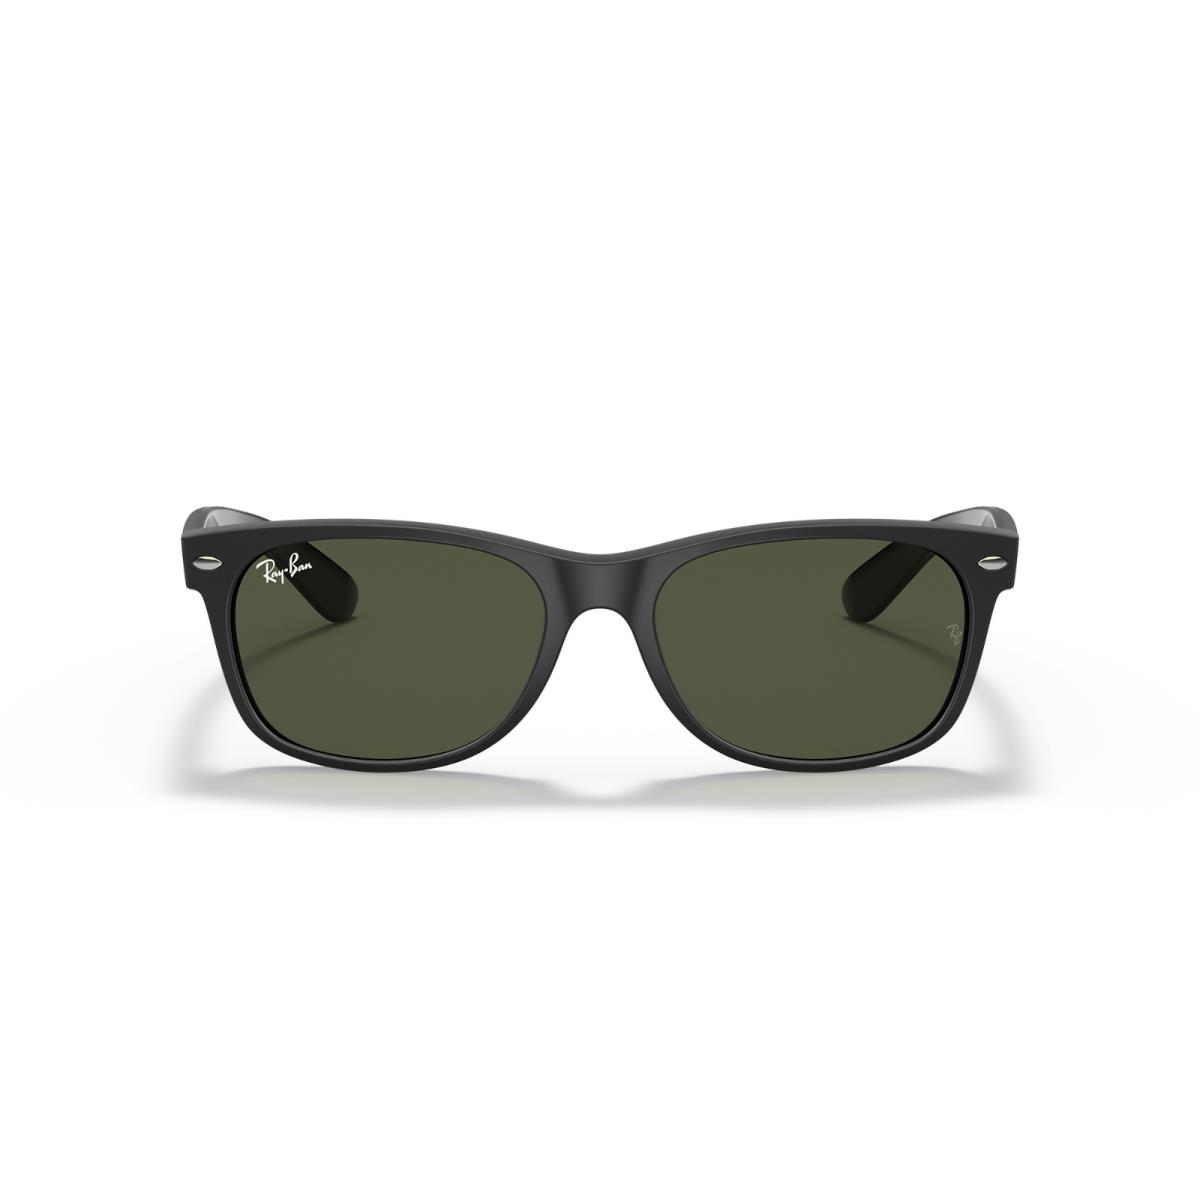 Ray Ban Sunglasses Wayfarer Color Mix RB2132 646231 55-18 Matte Black G-15 - Frame: Black, Lens: Green